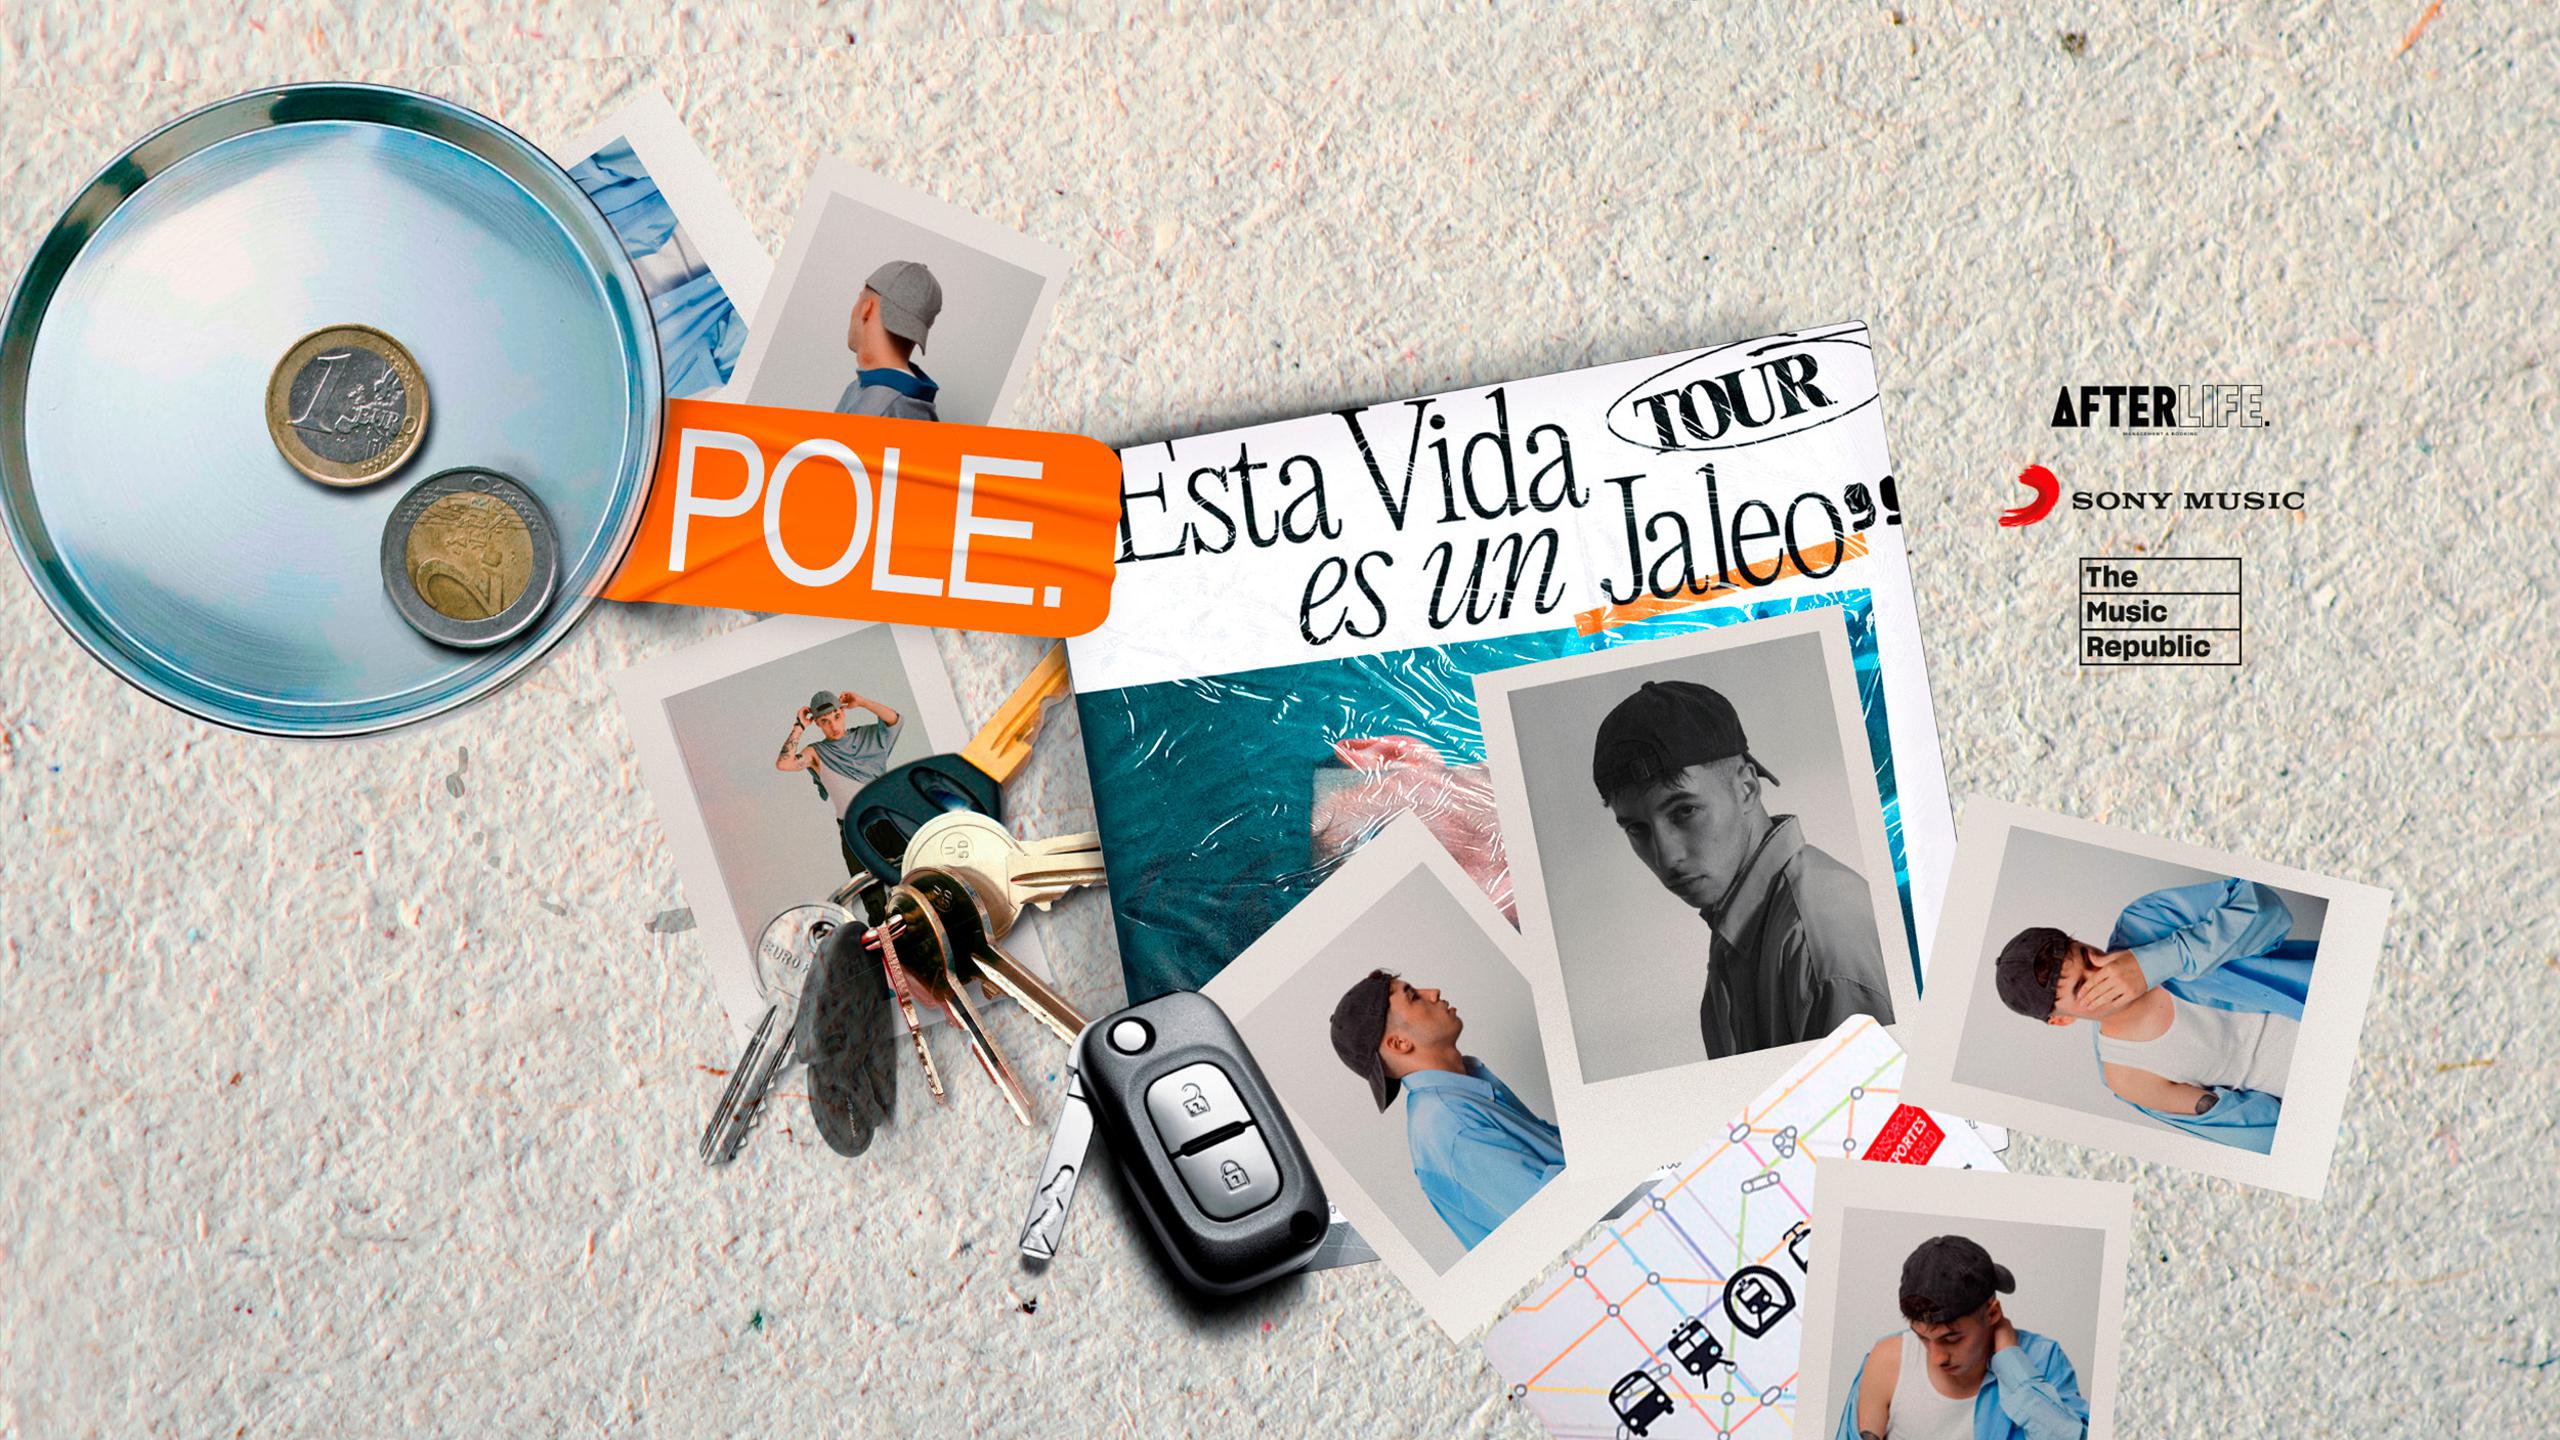 Fotografía promocional de Concierto de Pole. en Sevilla